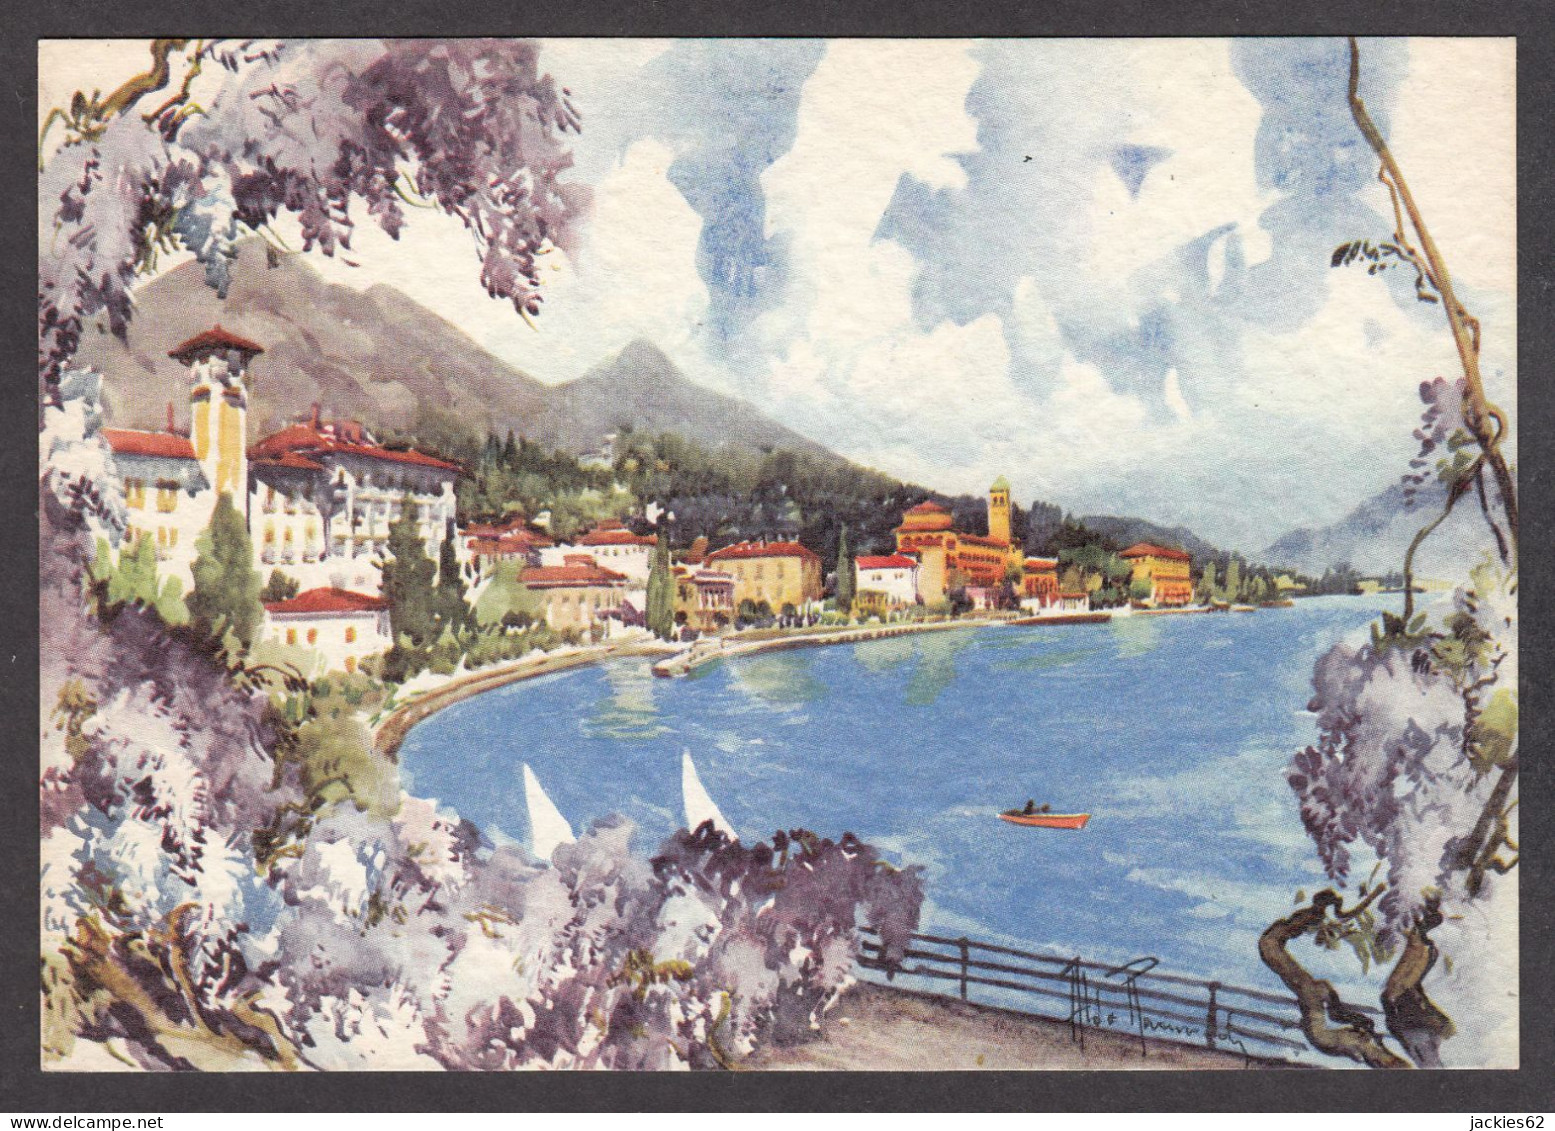 PR345/ Aldo RAIMONDI, *Gardone Riviera, Lago Di Garda* - Malerei & Gemälde